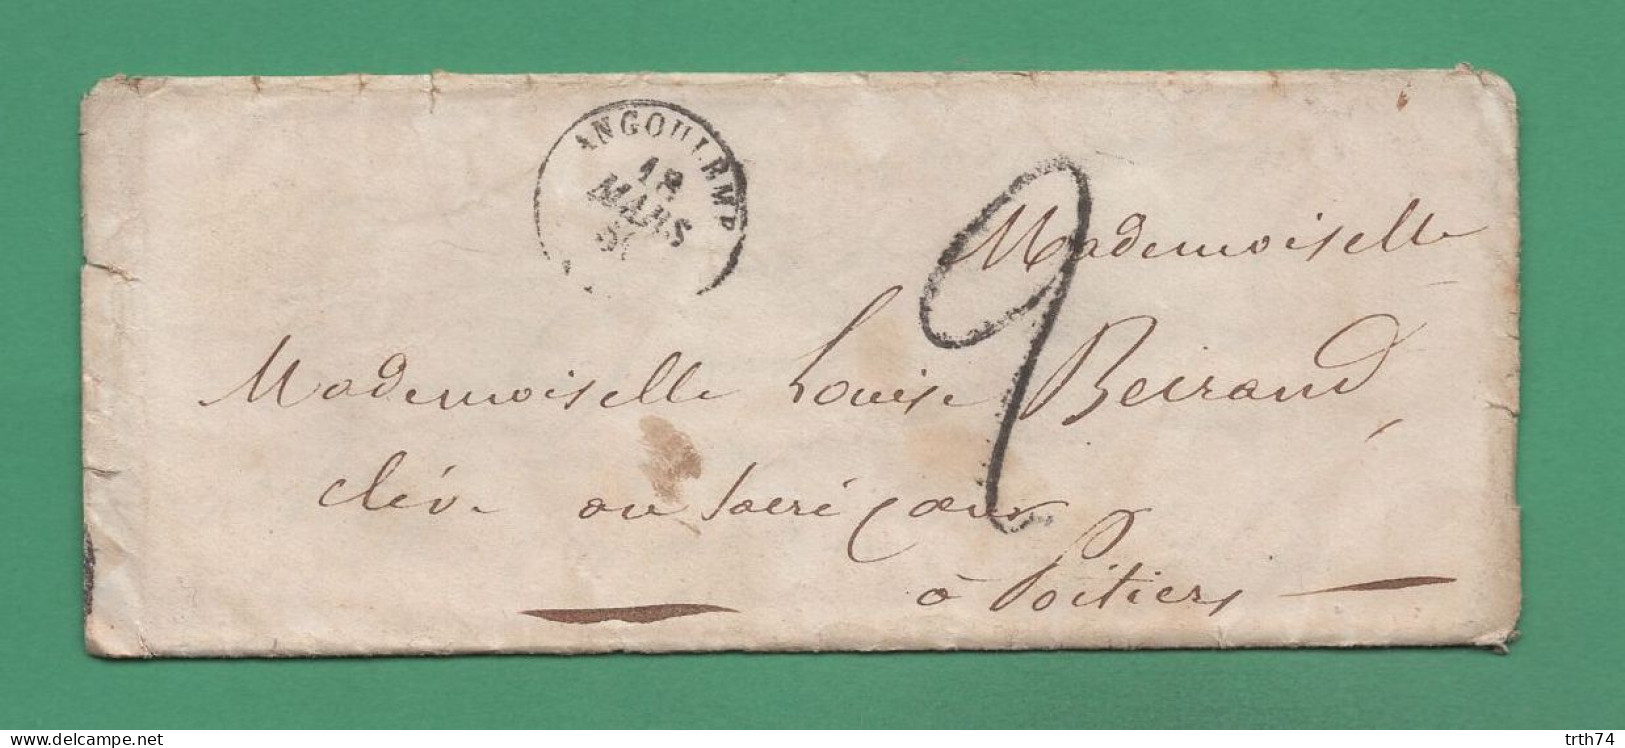 Cachet Angoulême Charente 18 Mars 1850 Sur Lettre à Destination De Poitiers Au Sacré Cœur - Unclassified